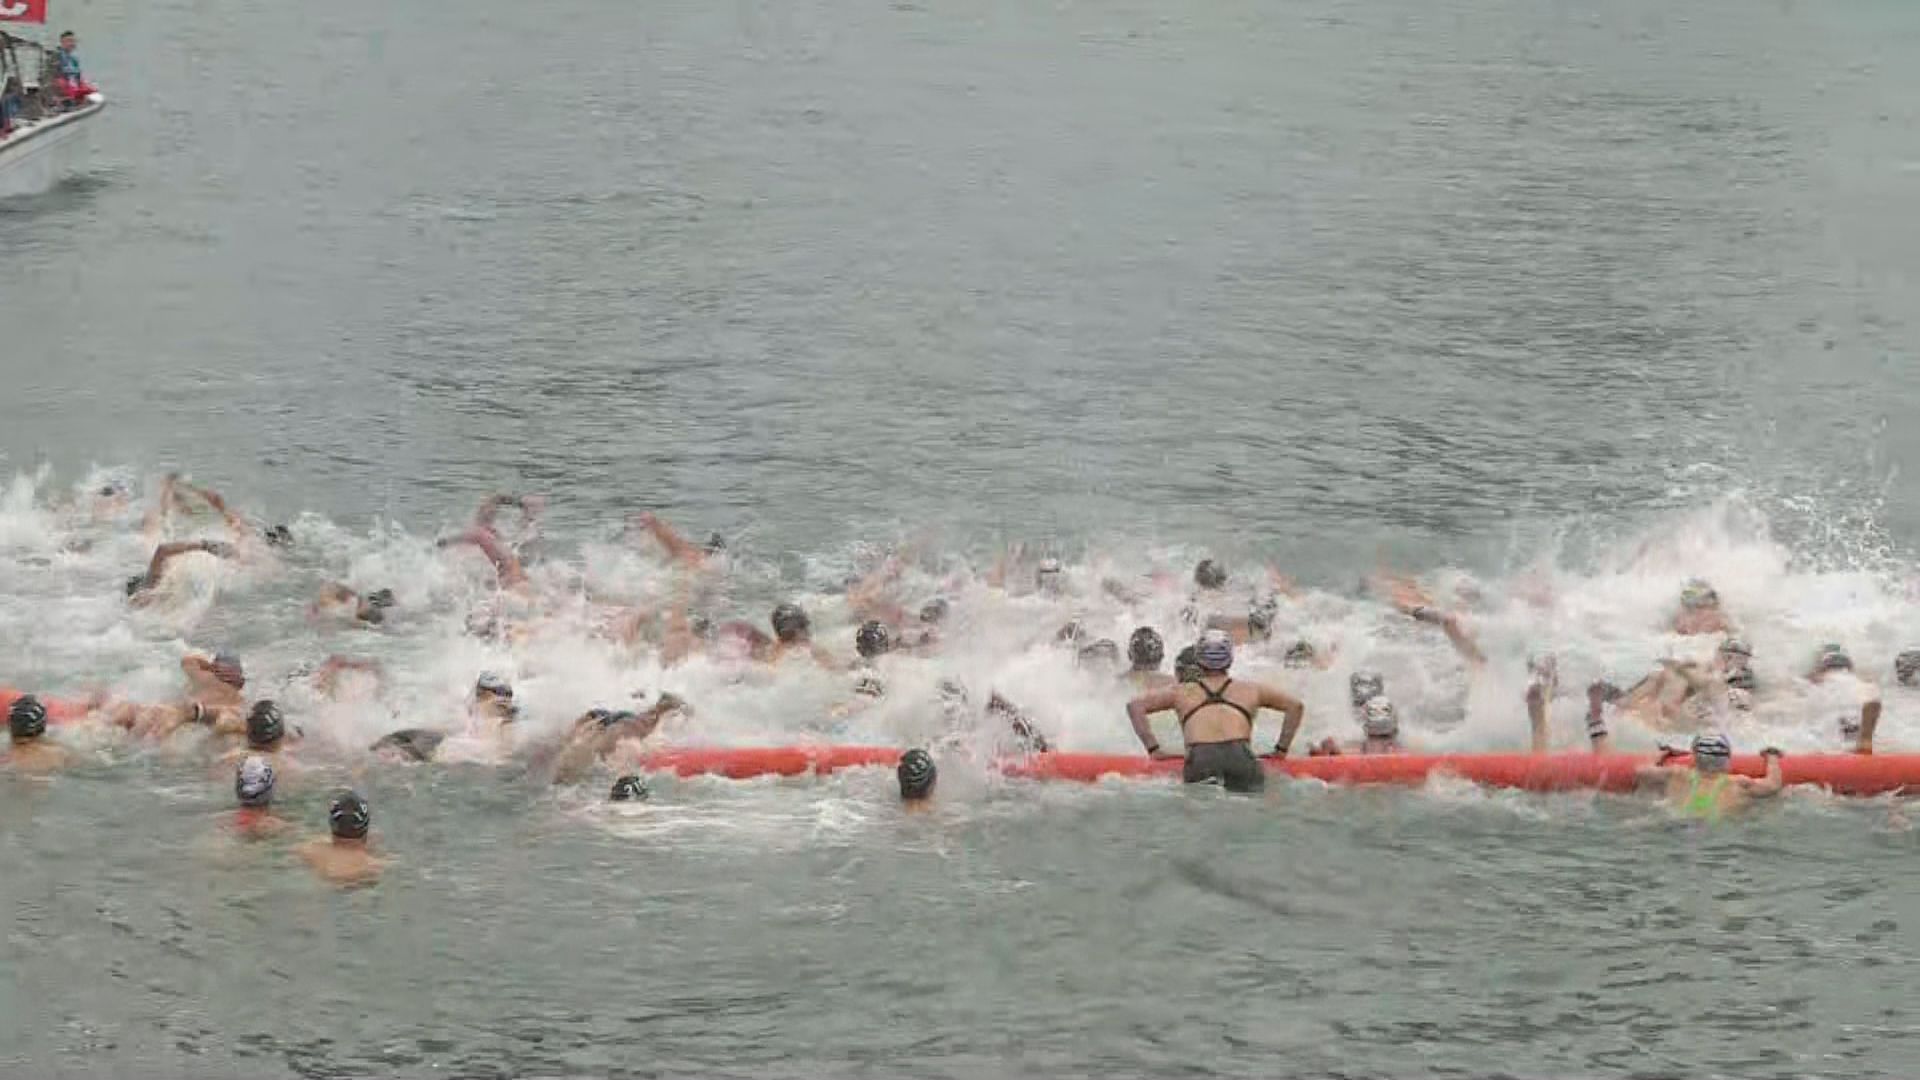 維港泳吸引4000人參加 有人不適要扶上醫療船